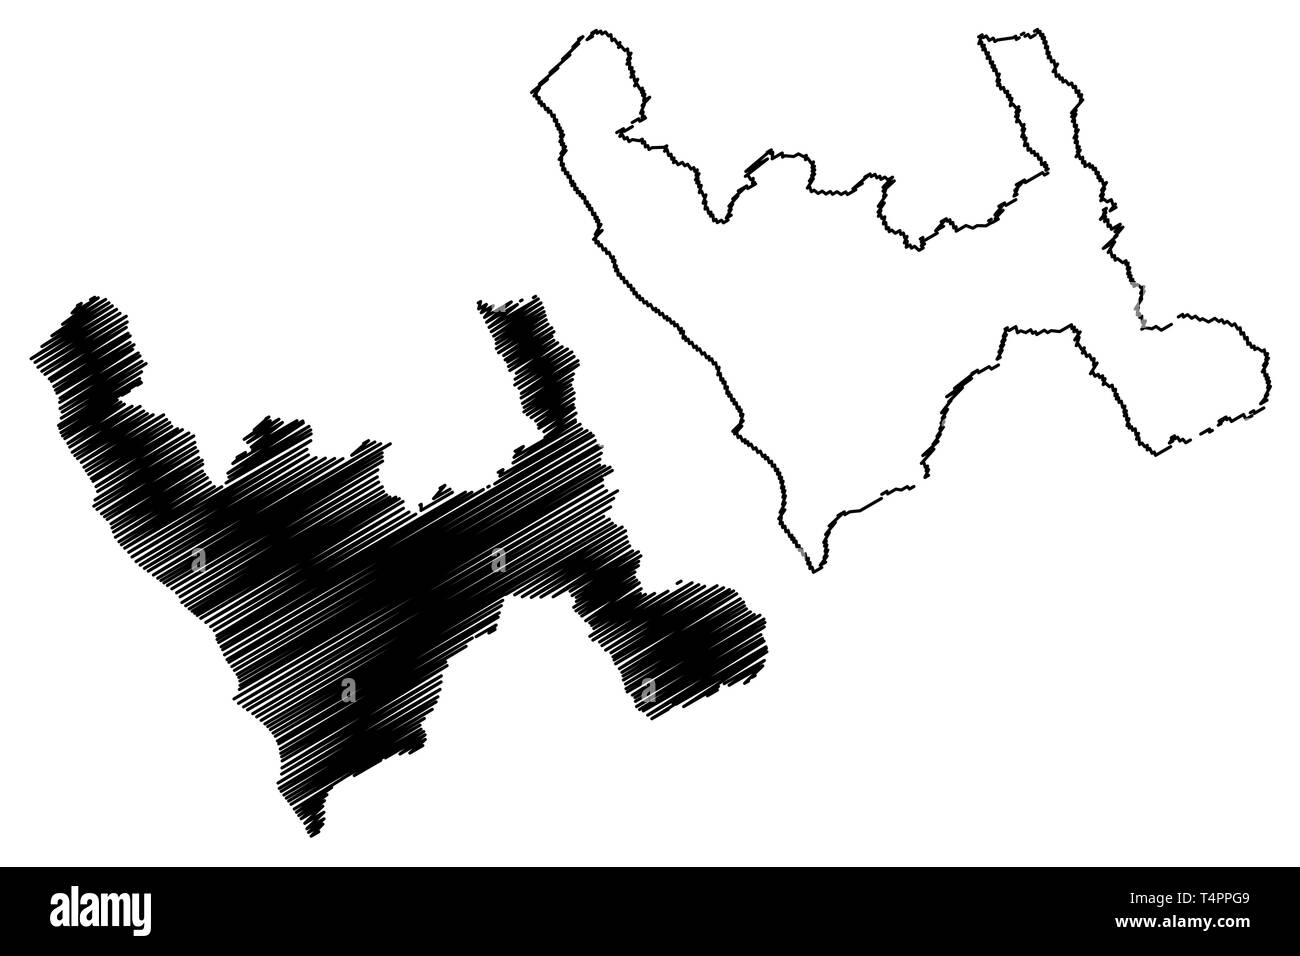 Abteilung von La Libertad (Republik Peru, Regionen von Peru) Karte Vektor-illustration, kritzeln Skizze La Libertad Karte Stock Vektor